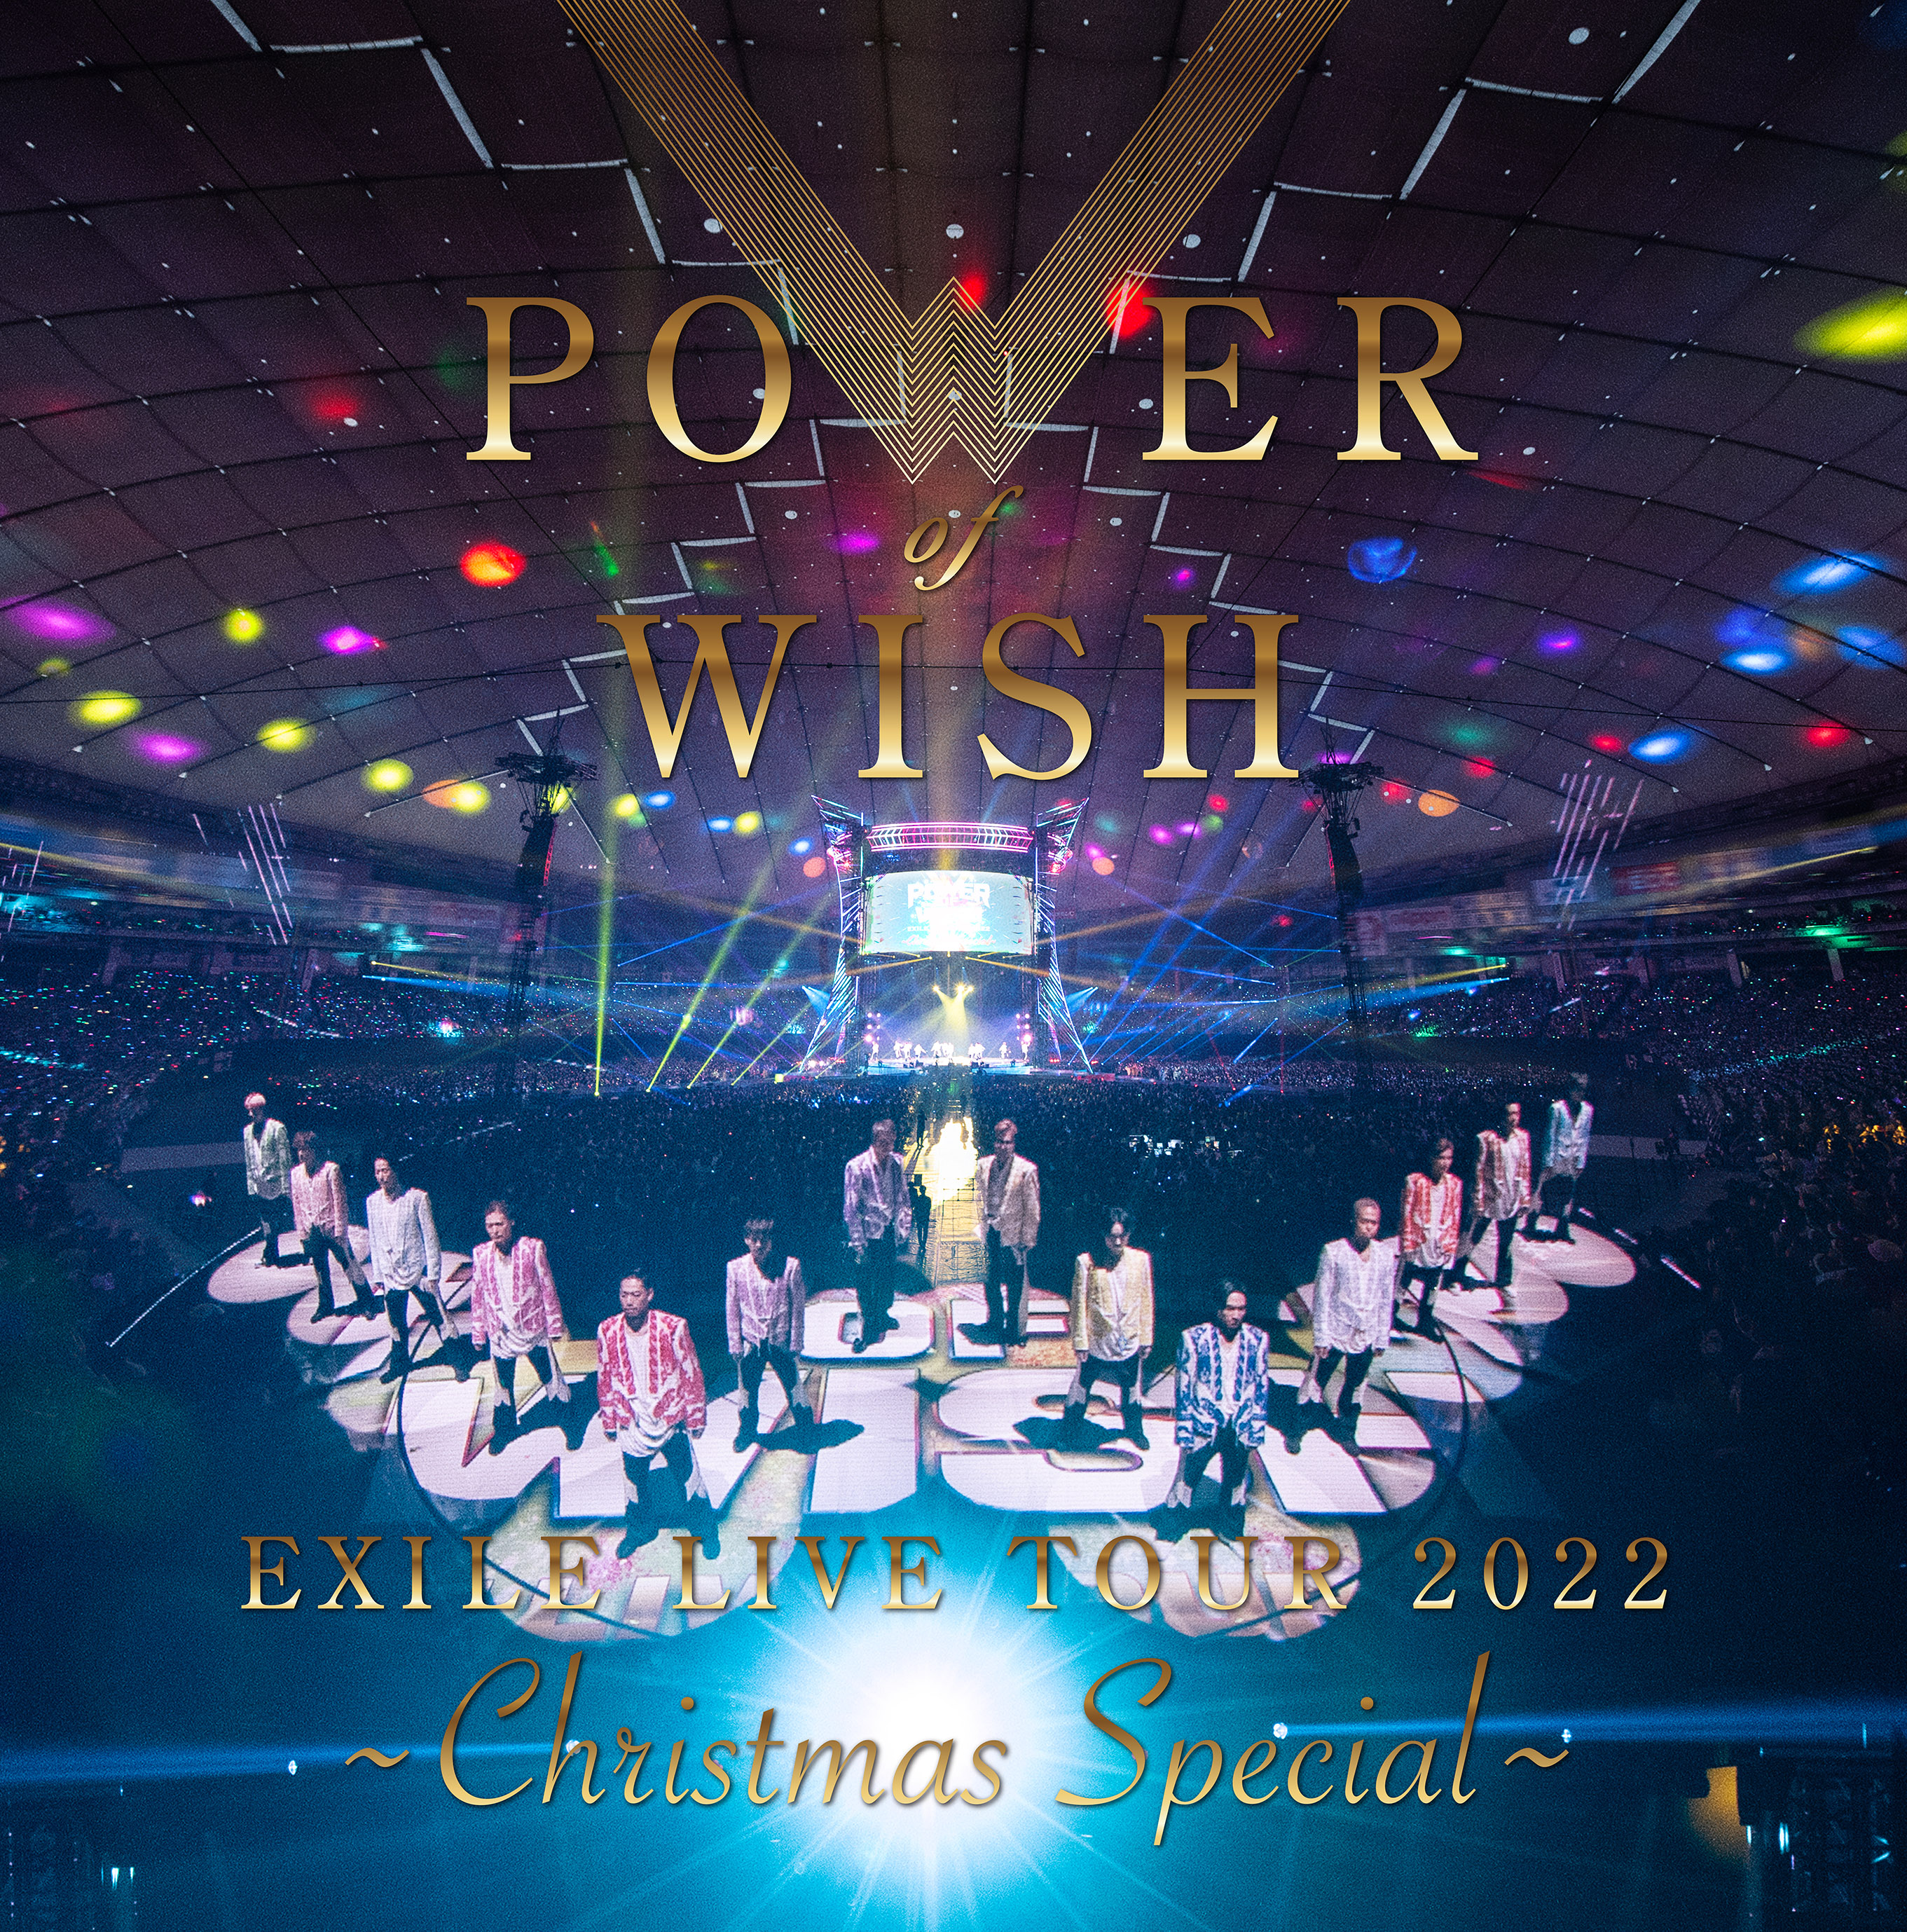 話題の映像満載! EXILEがライブDVD&Bluーray「EXILE LIVE TOUR 2022″POWER OF WISH”～Christmas Special～」を11月発売 